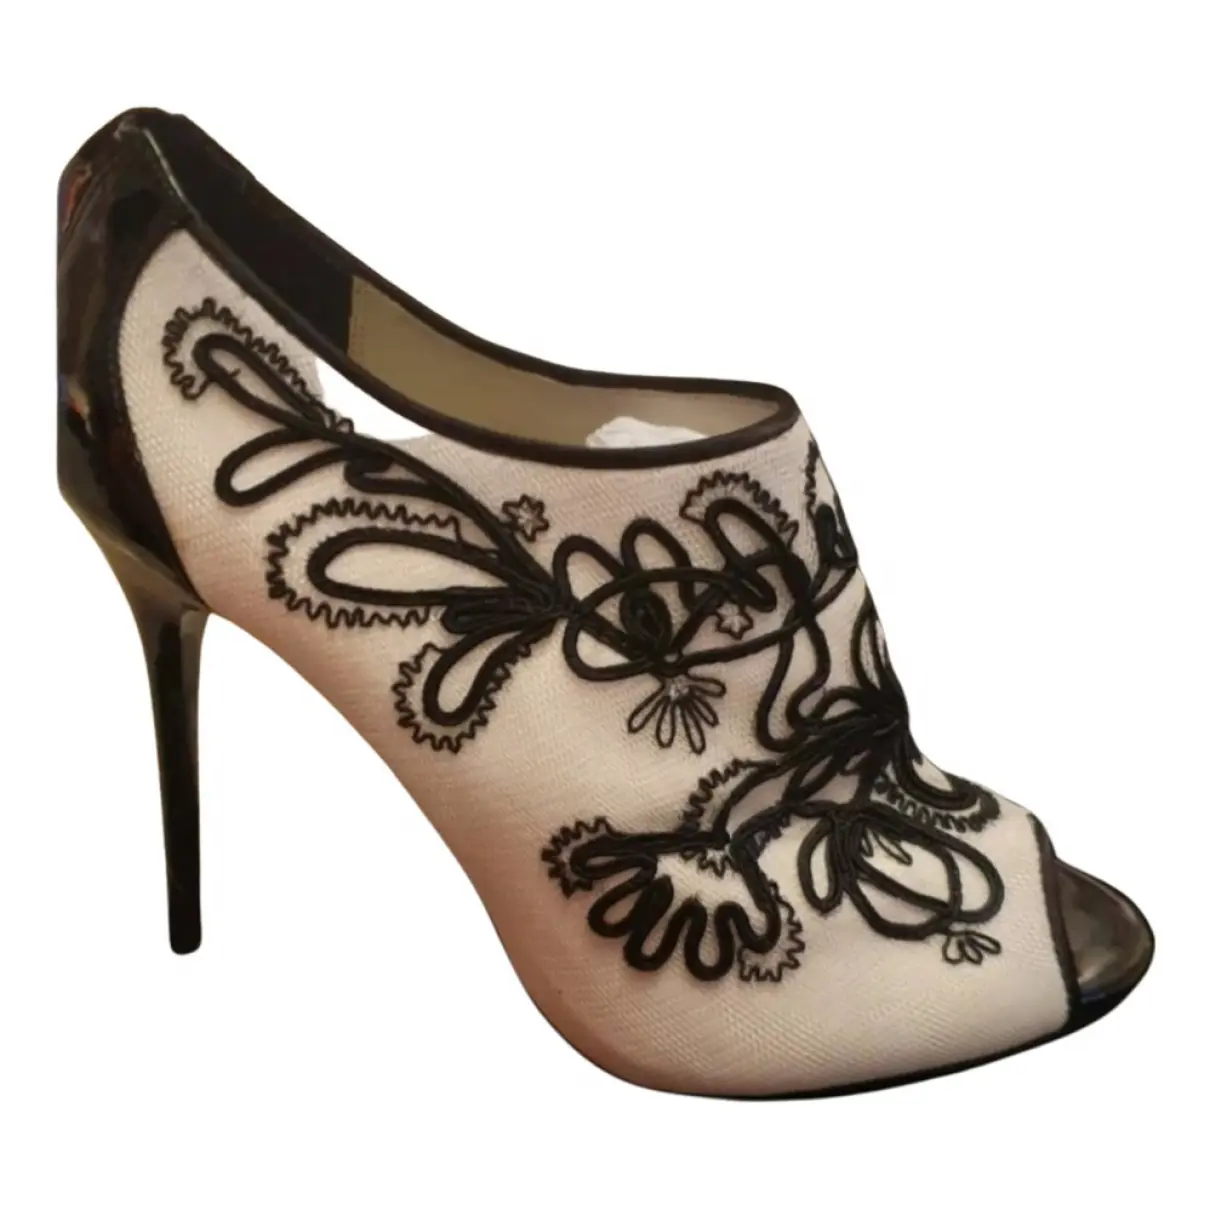 Cloth heels Karen Millen